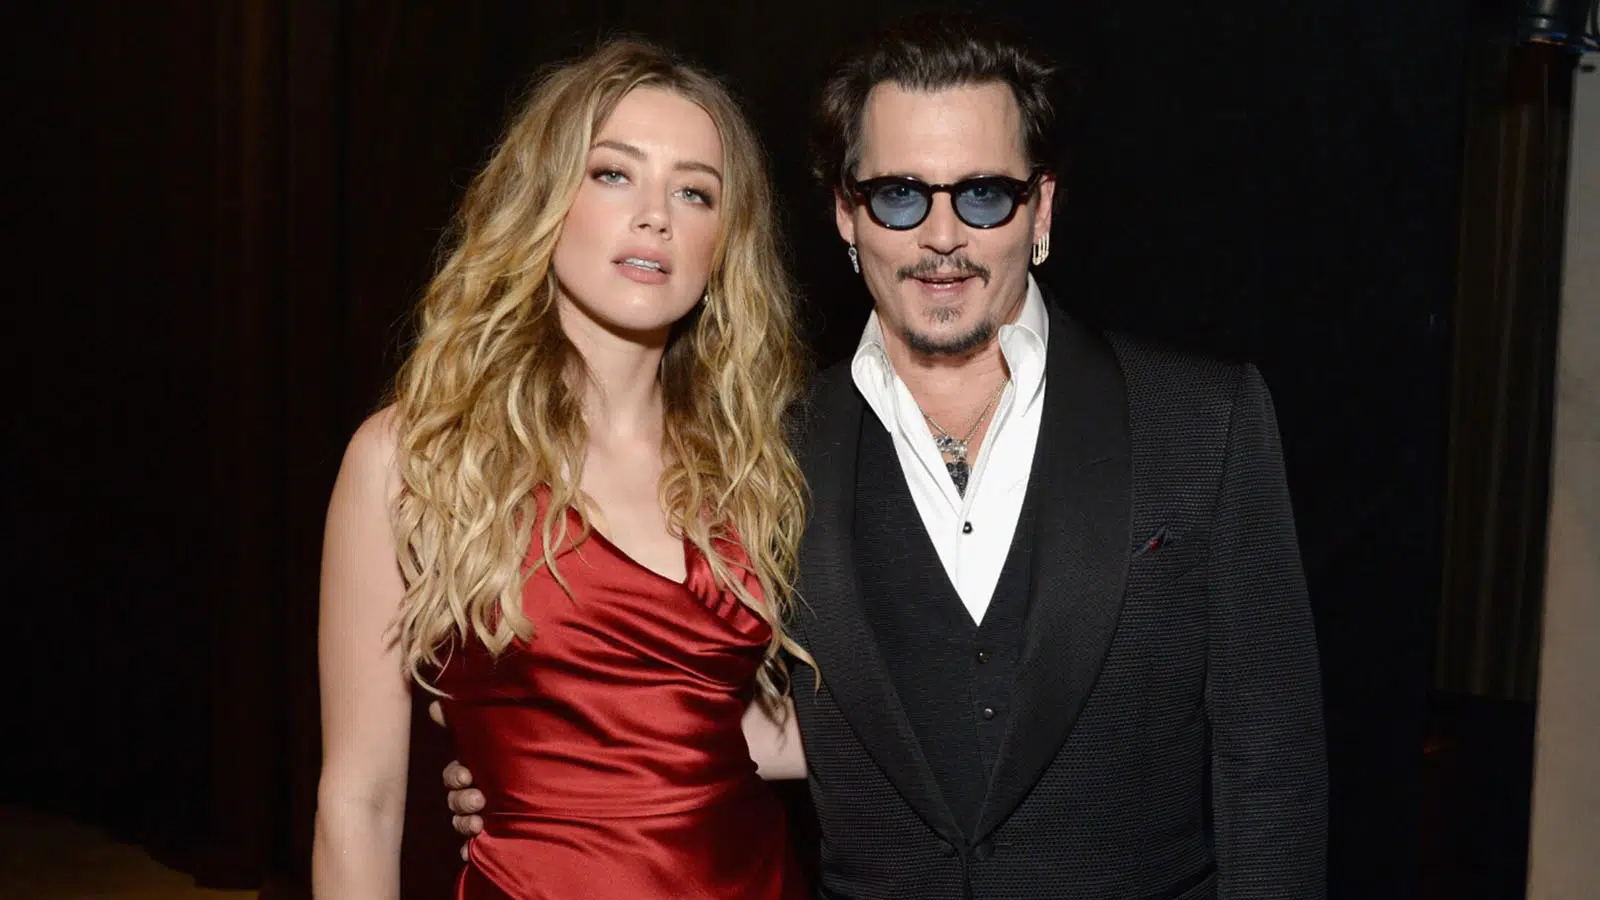 Amber Heard v Johnny Depp Defamation Trial